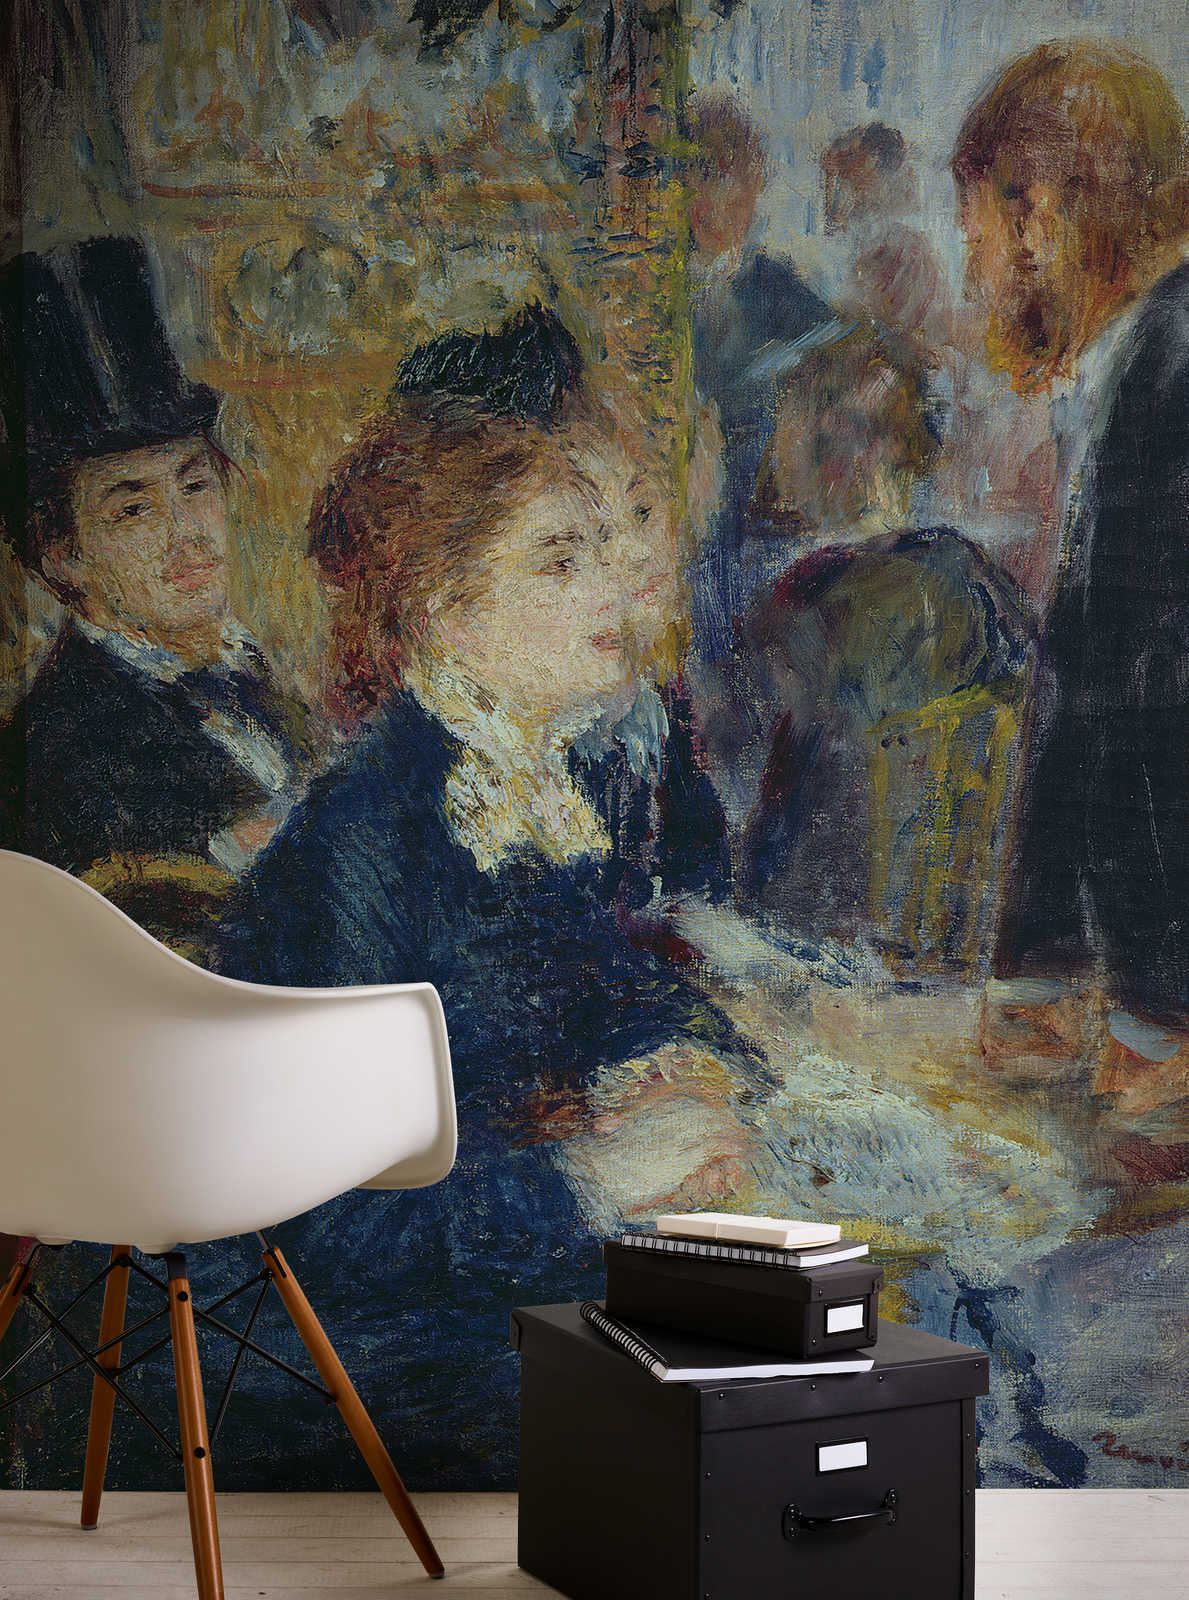             Fotobehang "In het koffiehuis" van Pierre Auguste Renoir
        